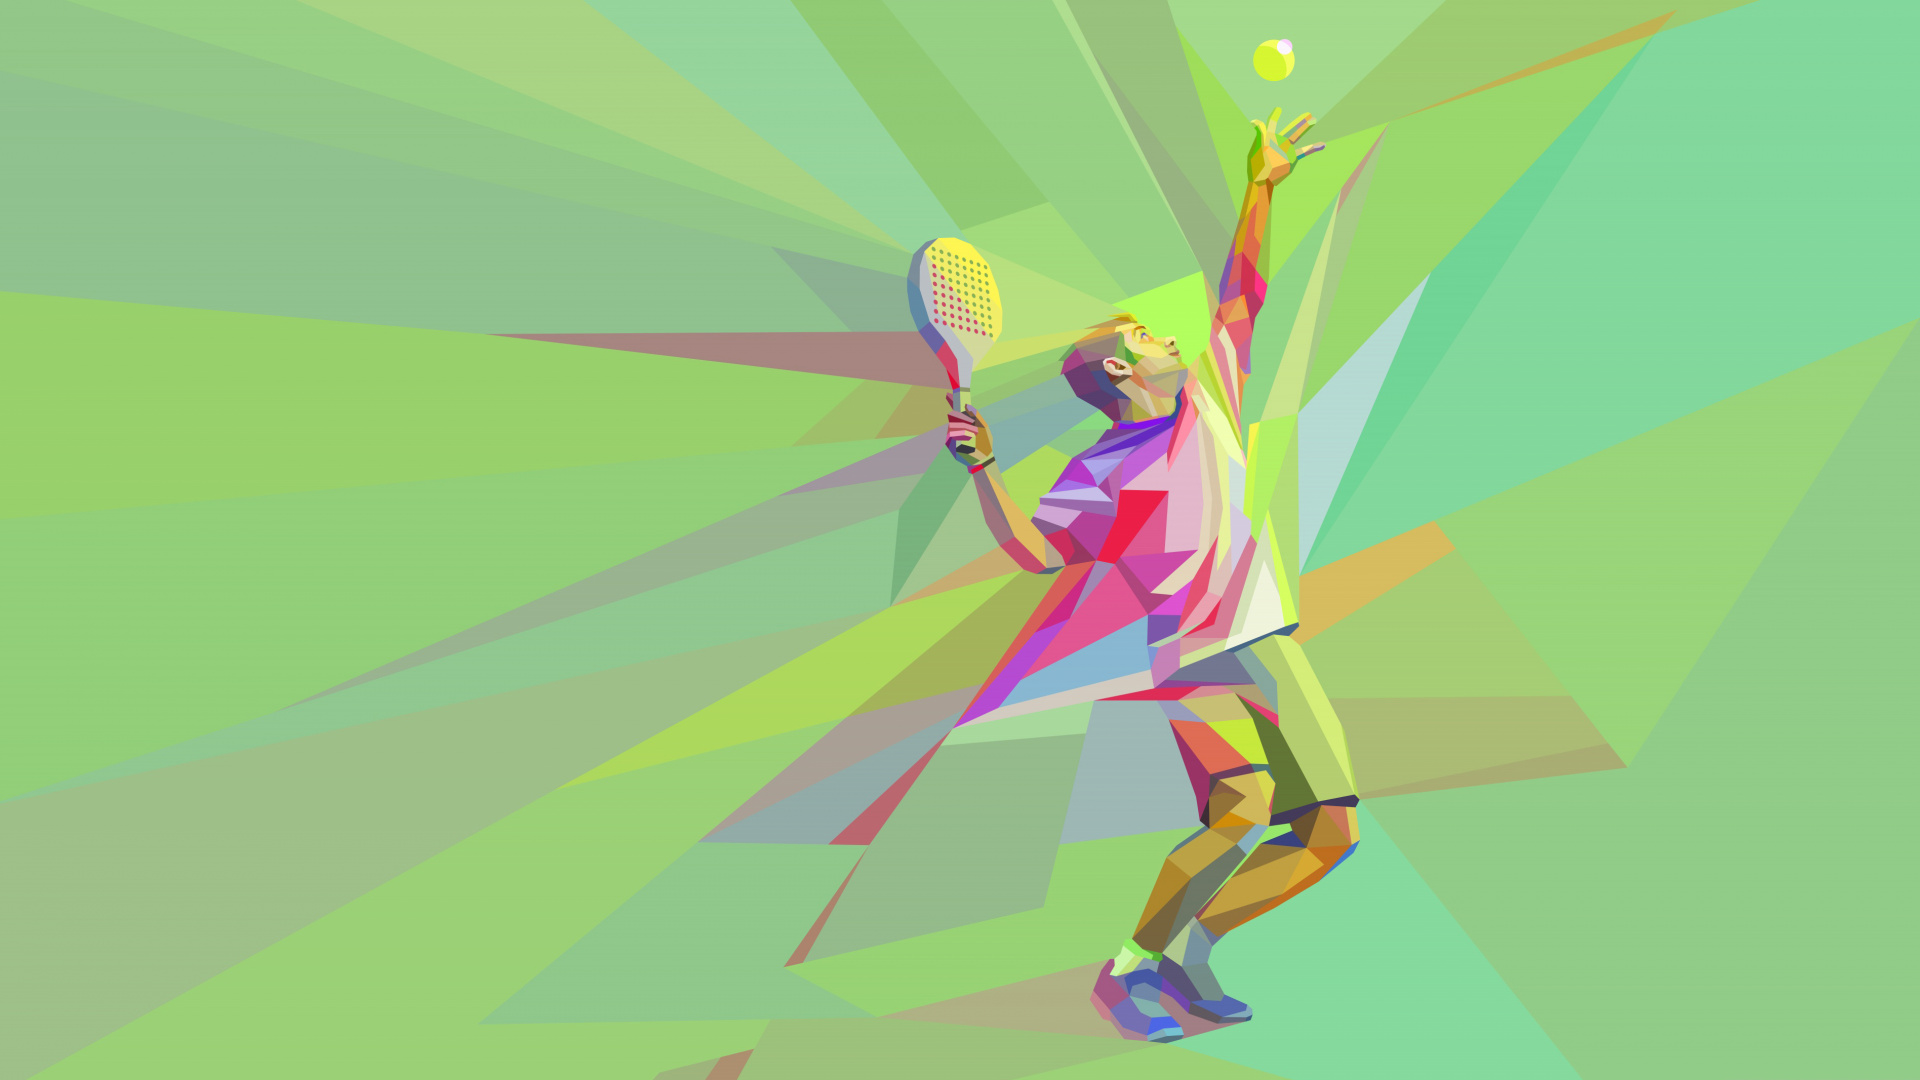 网球, 图形设计, 艺术, 温布尔登网球赛的冠军, 乐趣 壁纸 1920x1080 允许